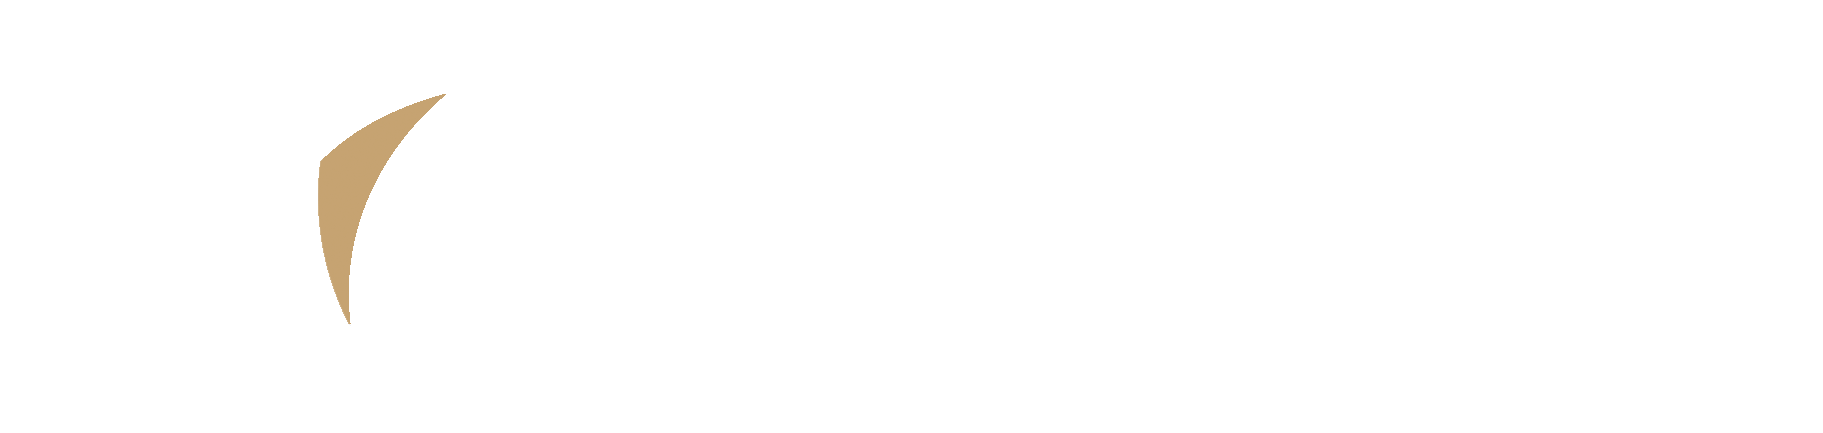 Fleet Air